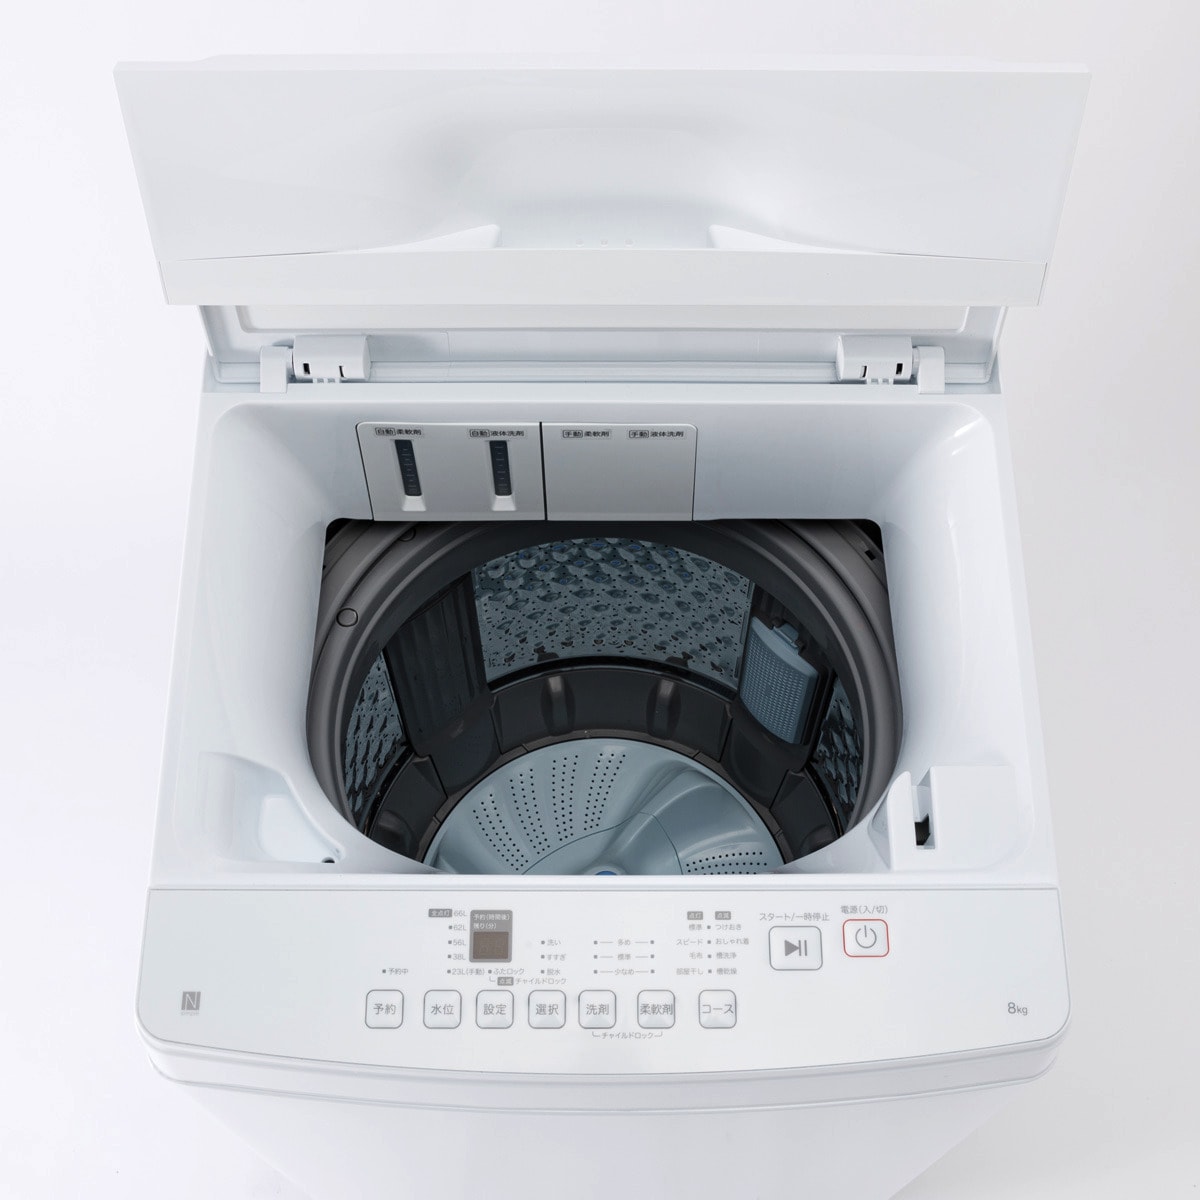 家電批評ベストバイ受賞】8kg洗剤自動投入洗濯機(NT80J1 ホワイト)通販 